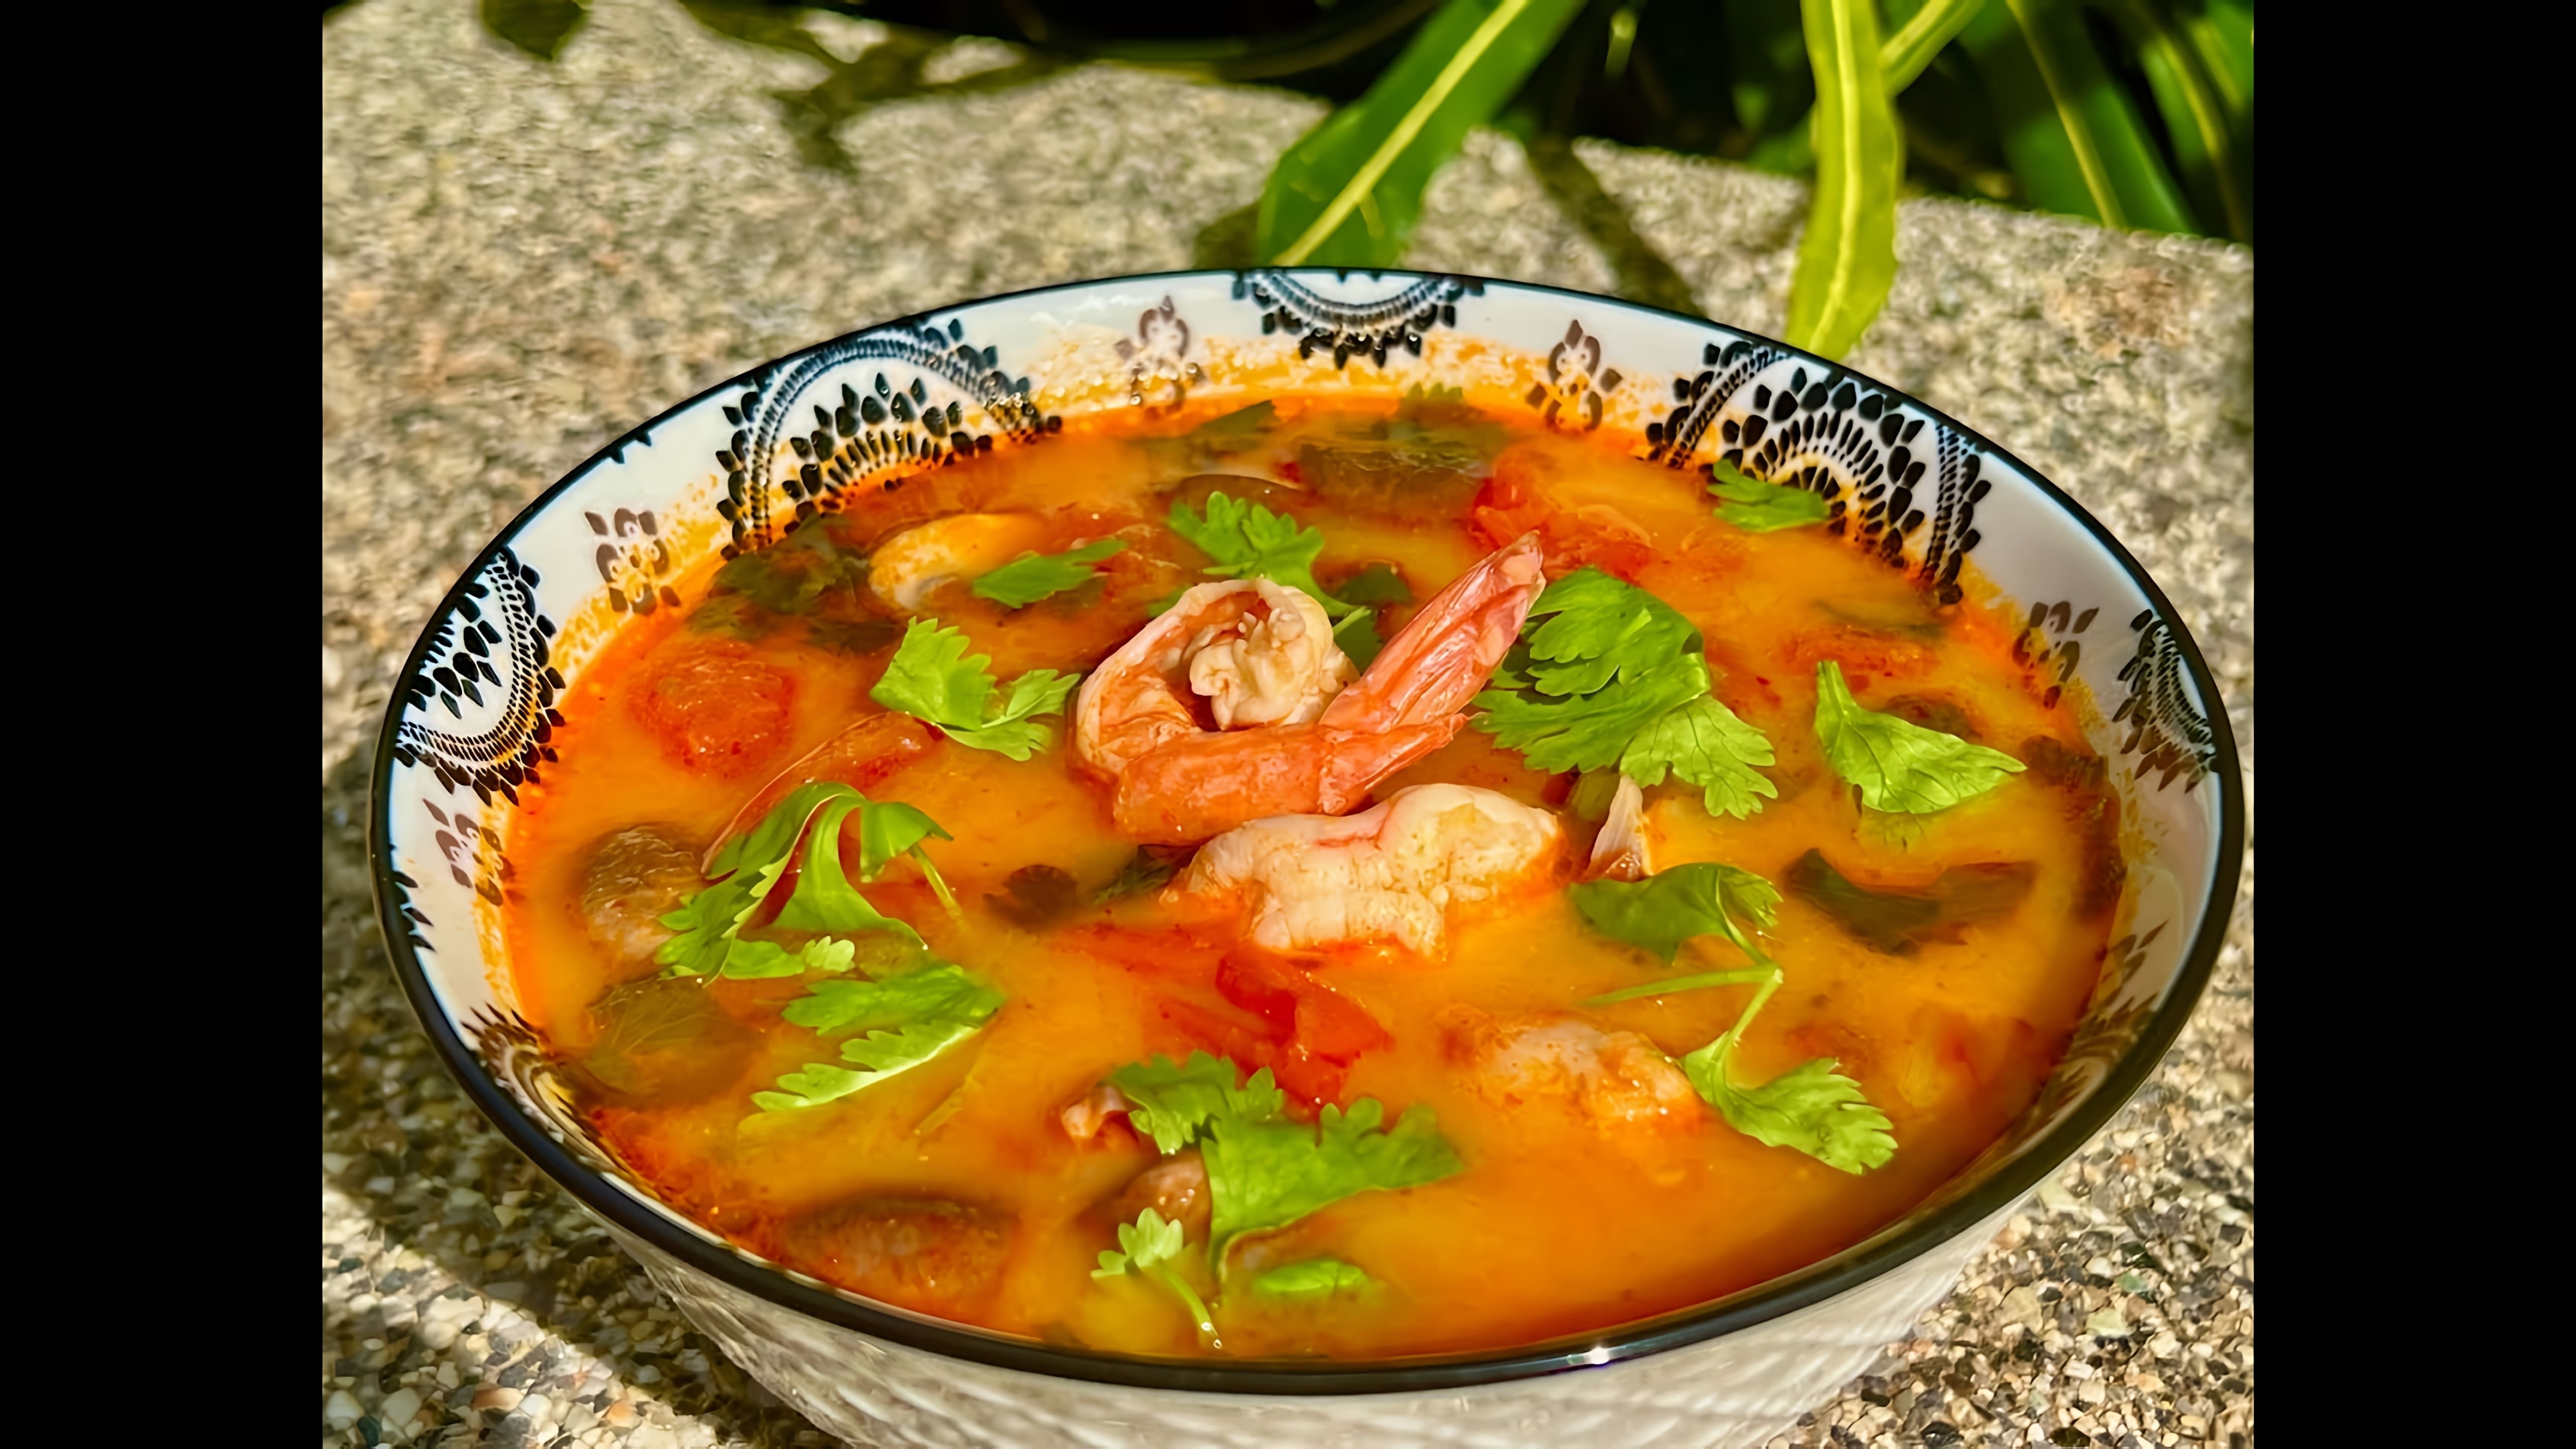 В этом видео демонстрируется процесс приготовления тайского супа Том Ям Кунг в домашних условиях